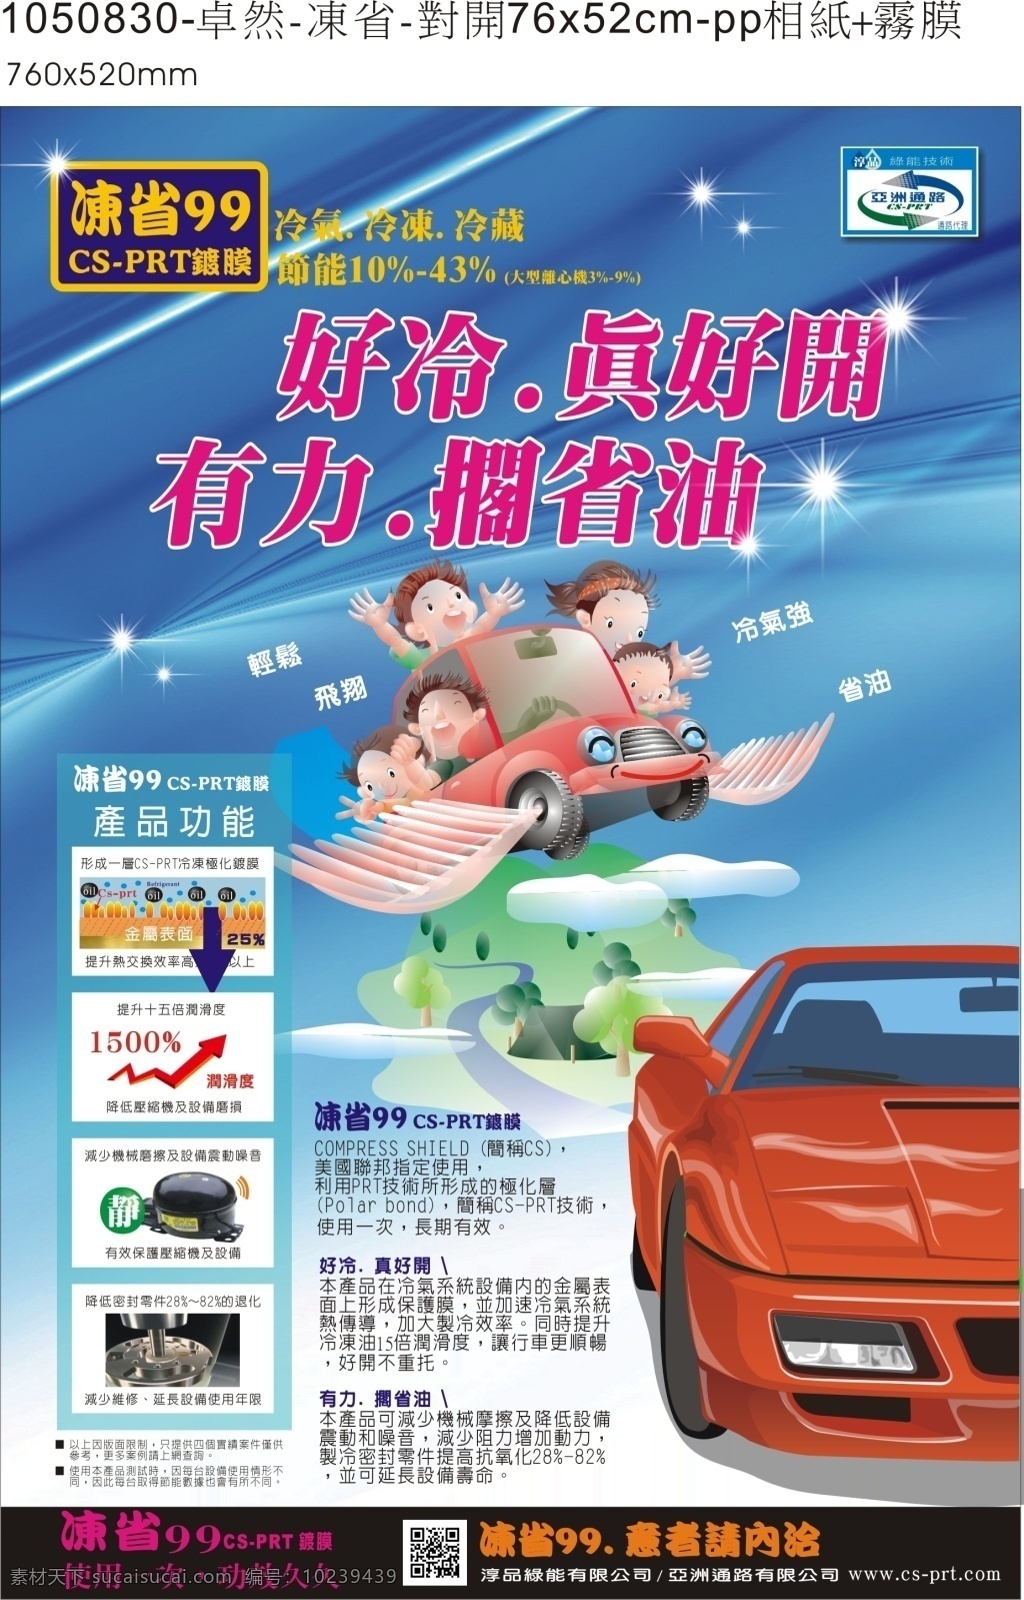 凍 省 99 汽 車 鍍 膜 廣 告 csprt 漫 畫 表 現 全家 出 遊 加 迷 夠 冷 有力 油 美 國 聯 邦 cs 指定 使用